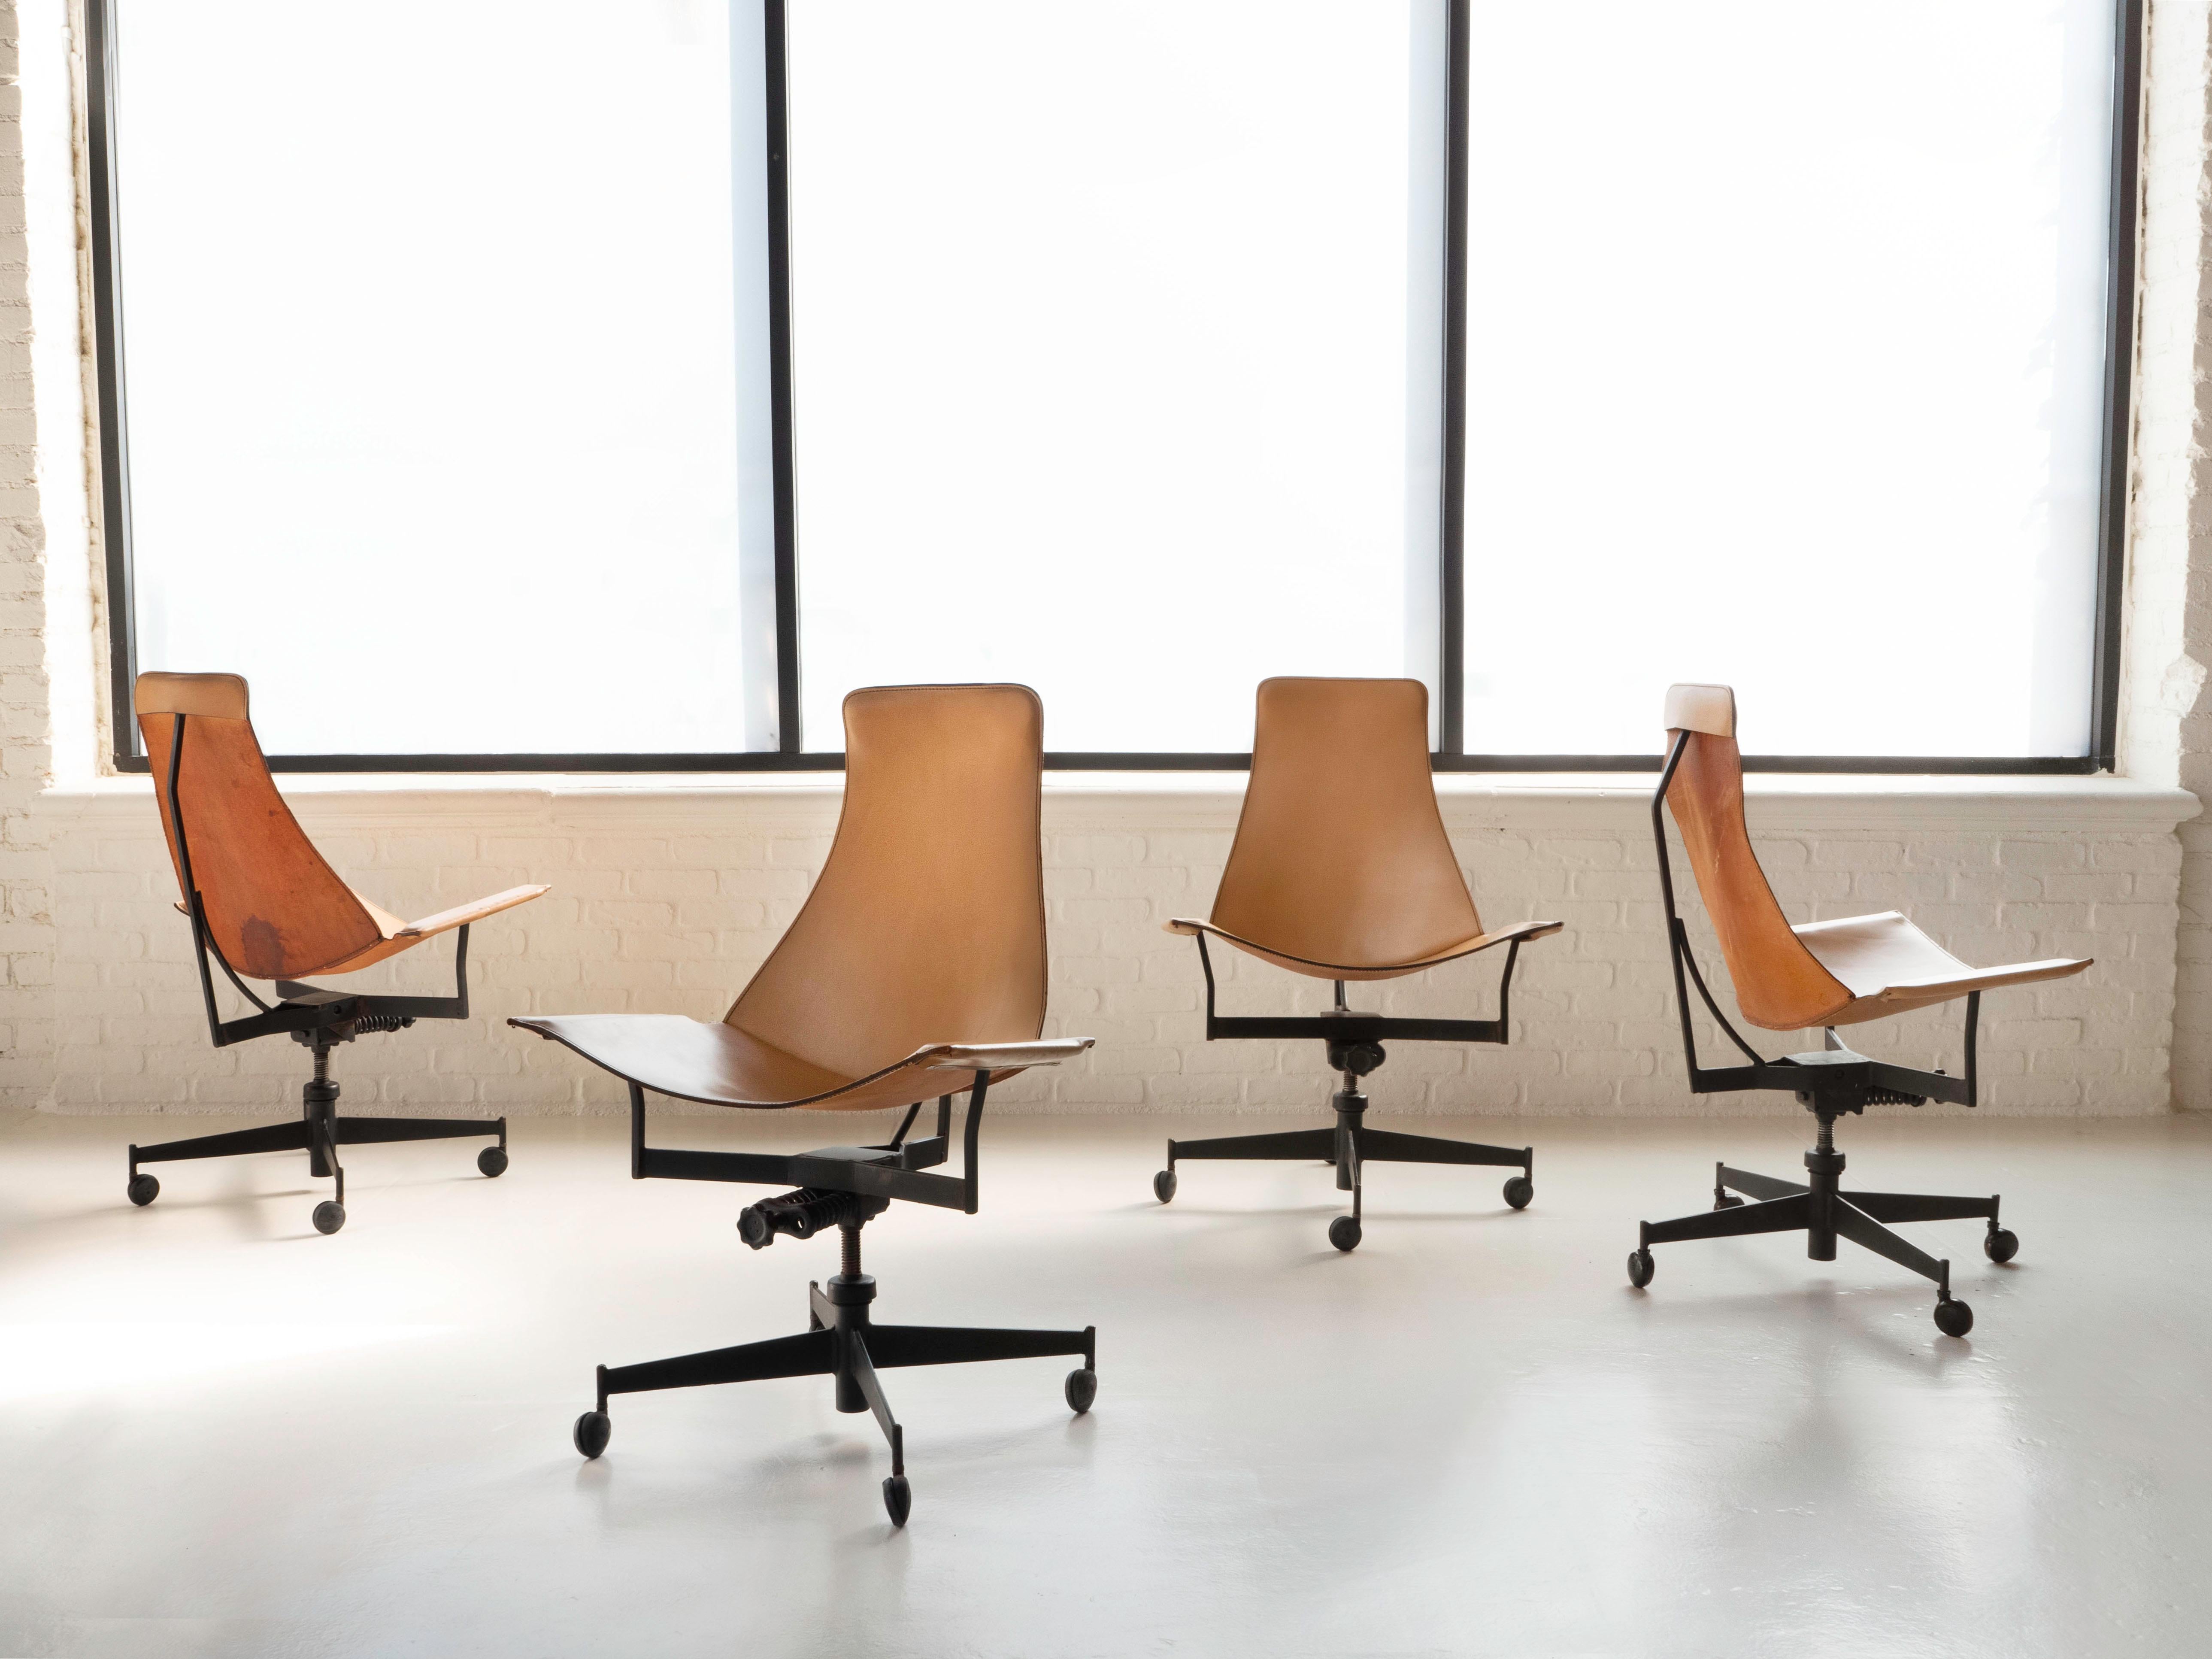 Drei Stühle verfügbar - Preis gilt pro Stuhl. Rabatt beim Kauf mehrerer Exemplare möglich. 

Entworfen von dem amerikanischen Architekten William Katavolos in den 1950er Jahren, New York. 
Der Federmechanismus unterhalb des Rahmens stellt die